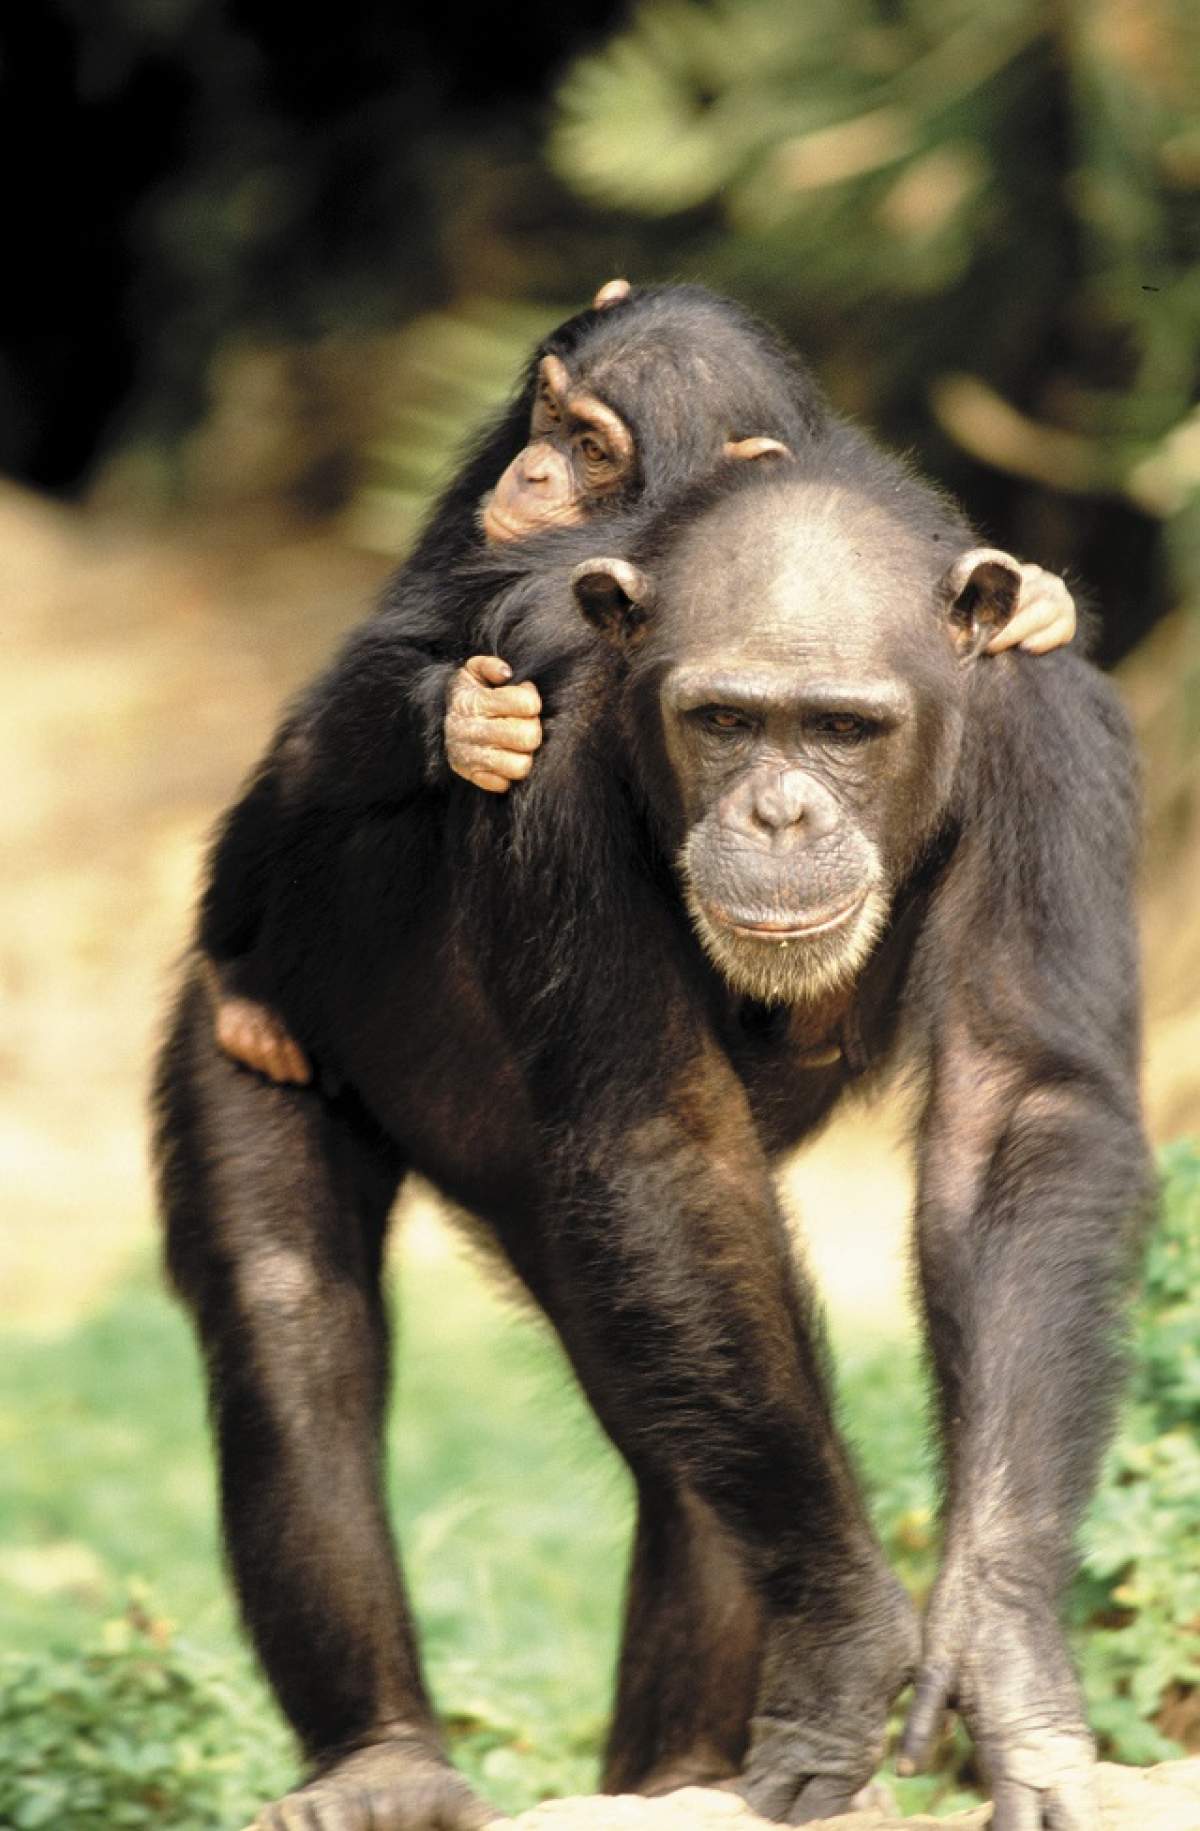 Cimpanzeii ar putea primi statutul de "persoane"! Ce se va întâmpla apoi cu ei